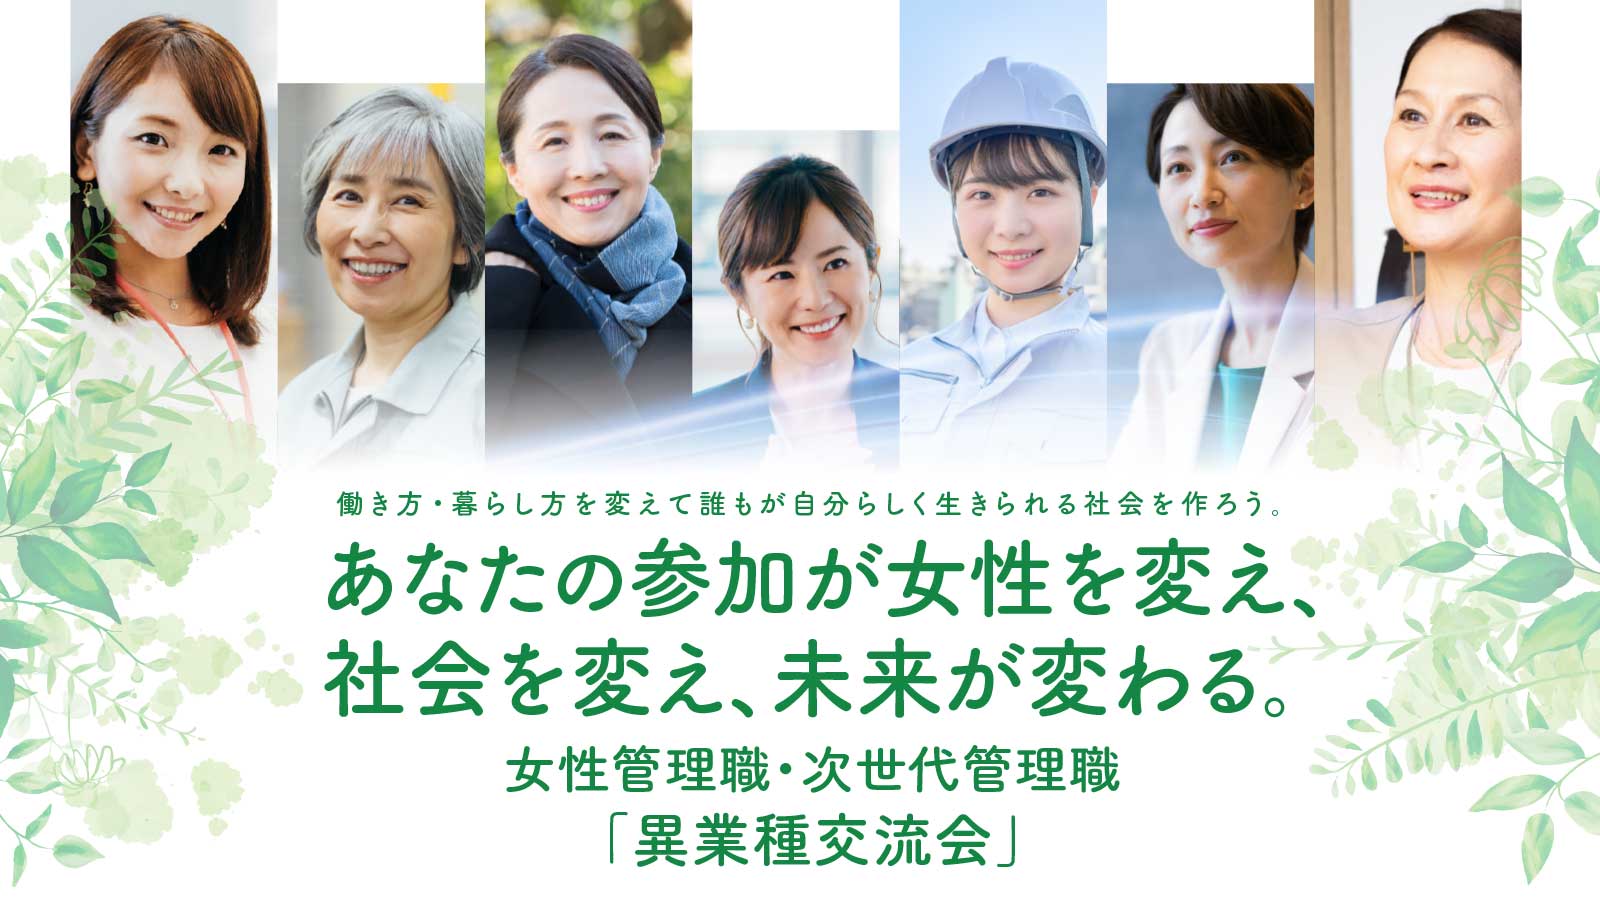 長野県女性管理職・次世代管理職「異業種交流会」